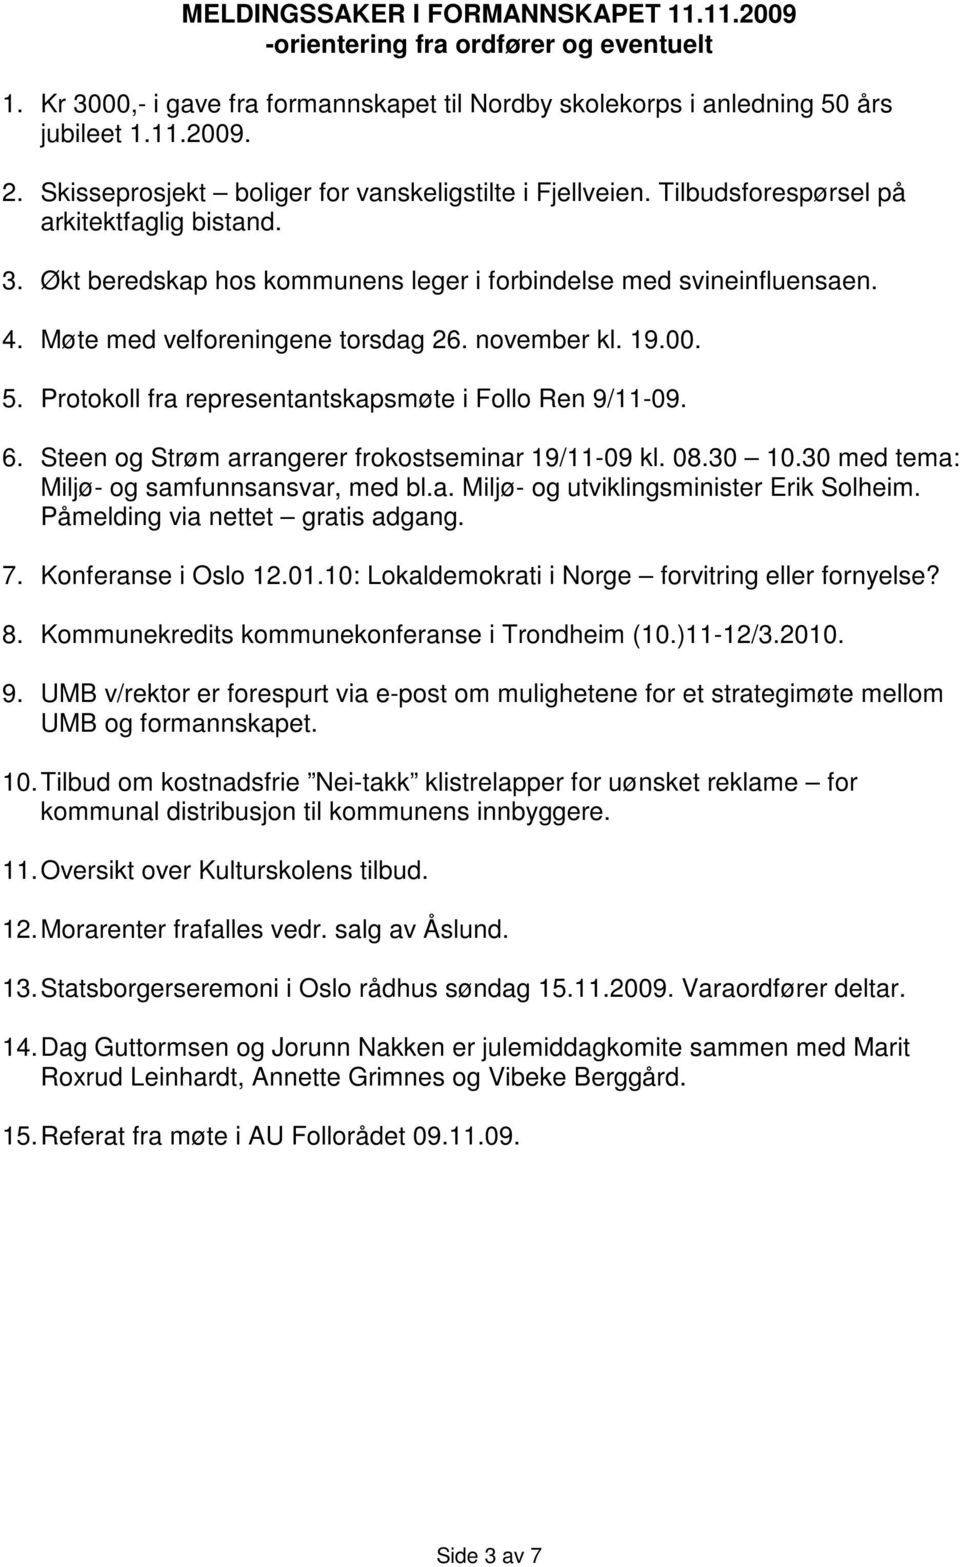 Møte med velforeningene torsdag 26. november kl. 19.00. 5. Protokoll fra representantskapsmøte i Follo Ren 9/11-09. 6. Steen og Strøm arrangerer frokostseminar 19/11-09 kl. 08.30 10.